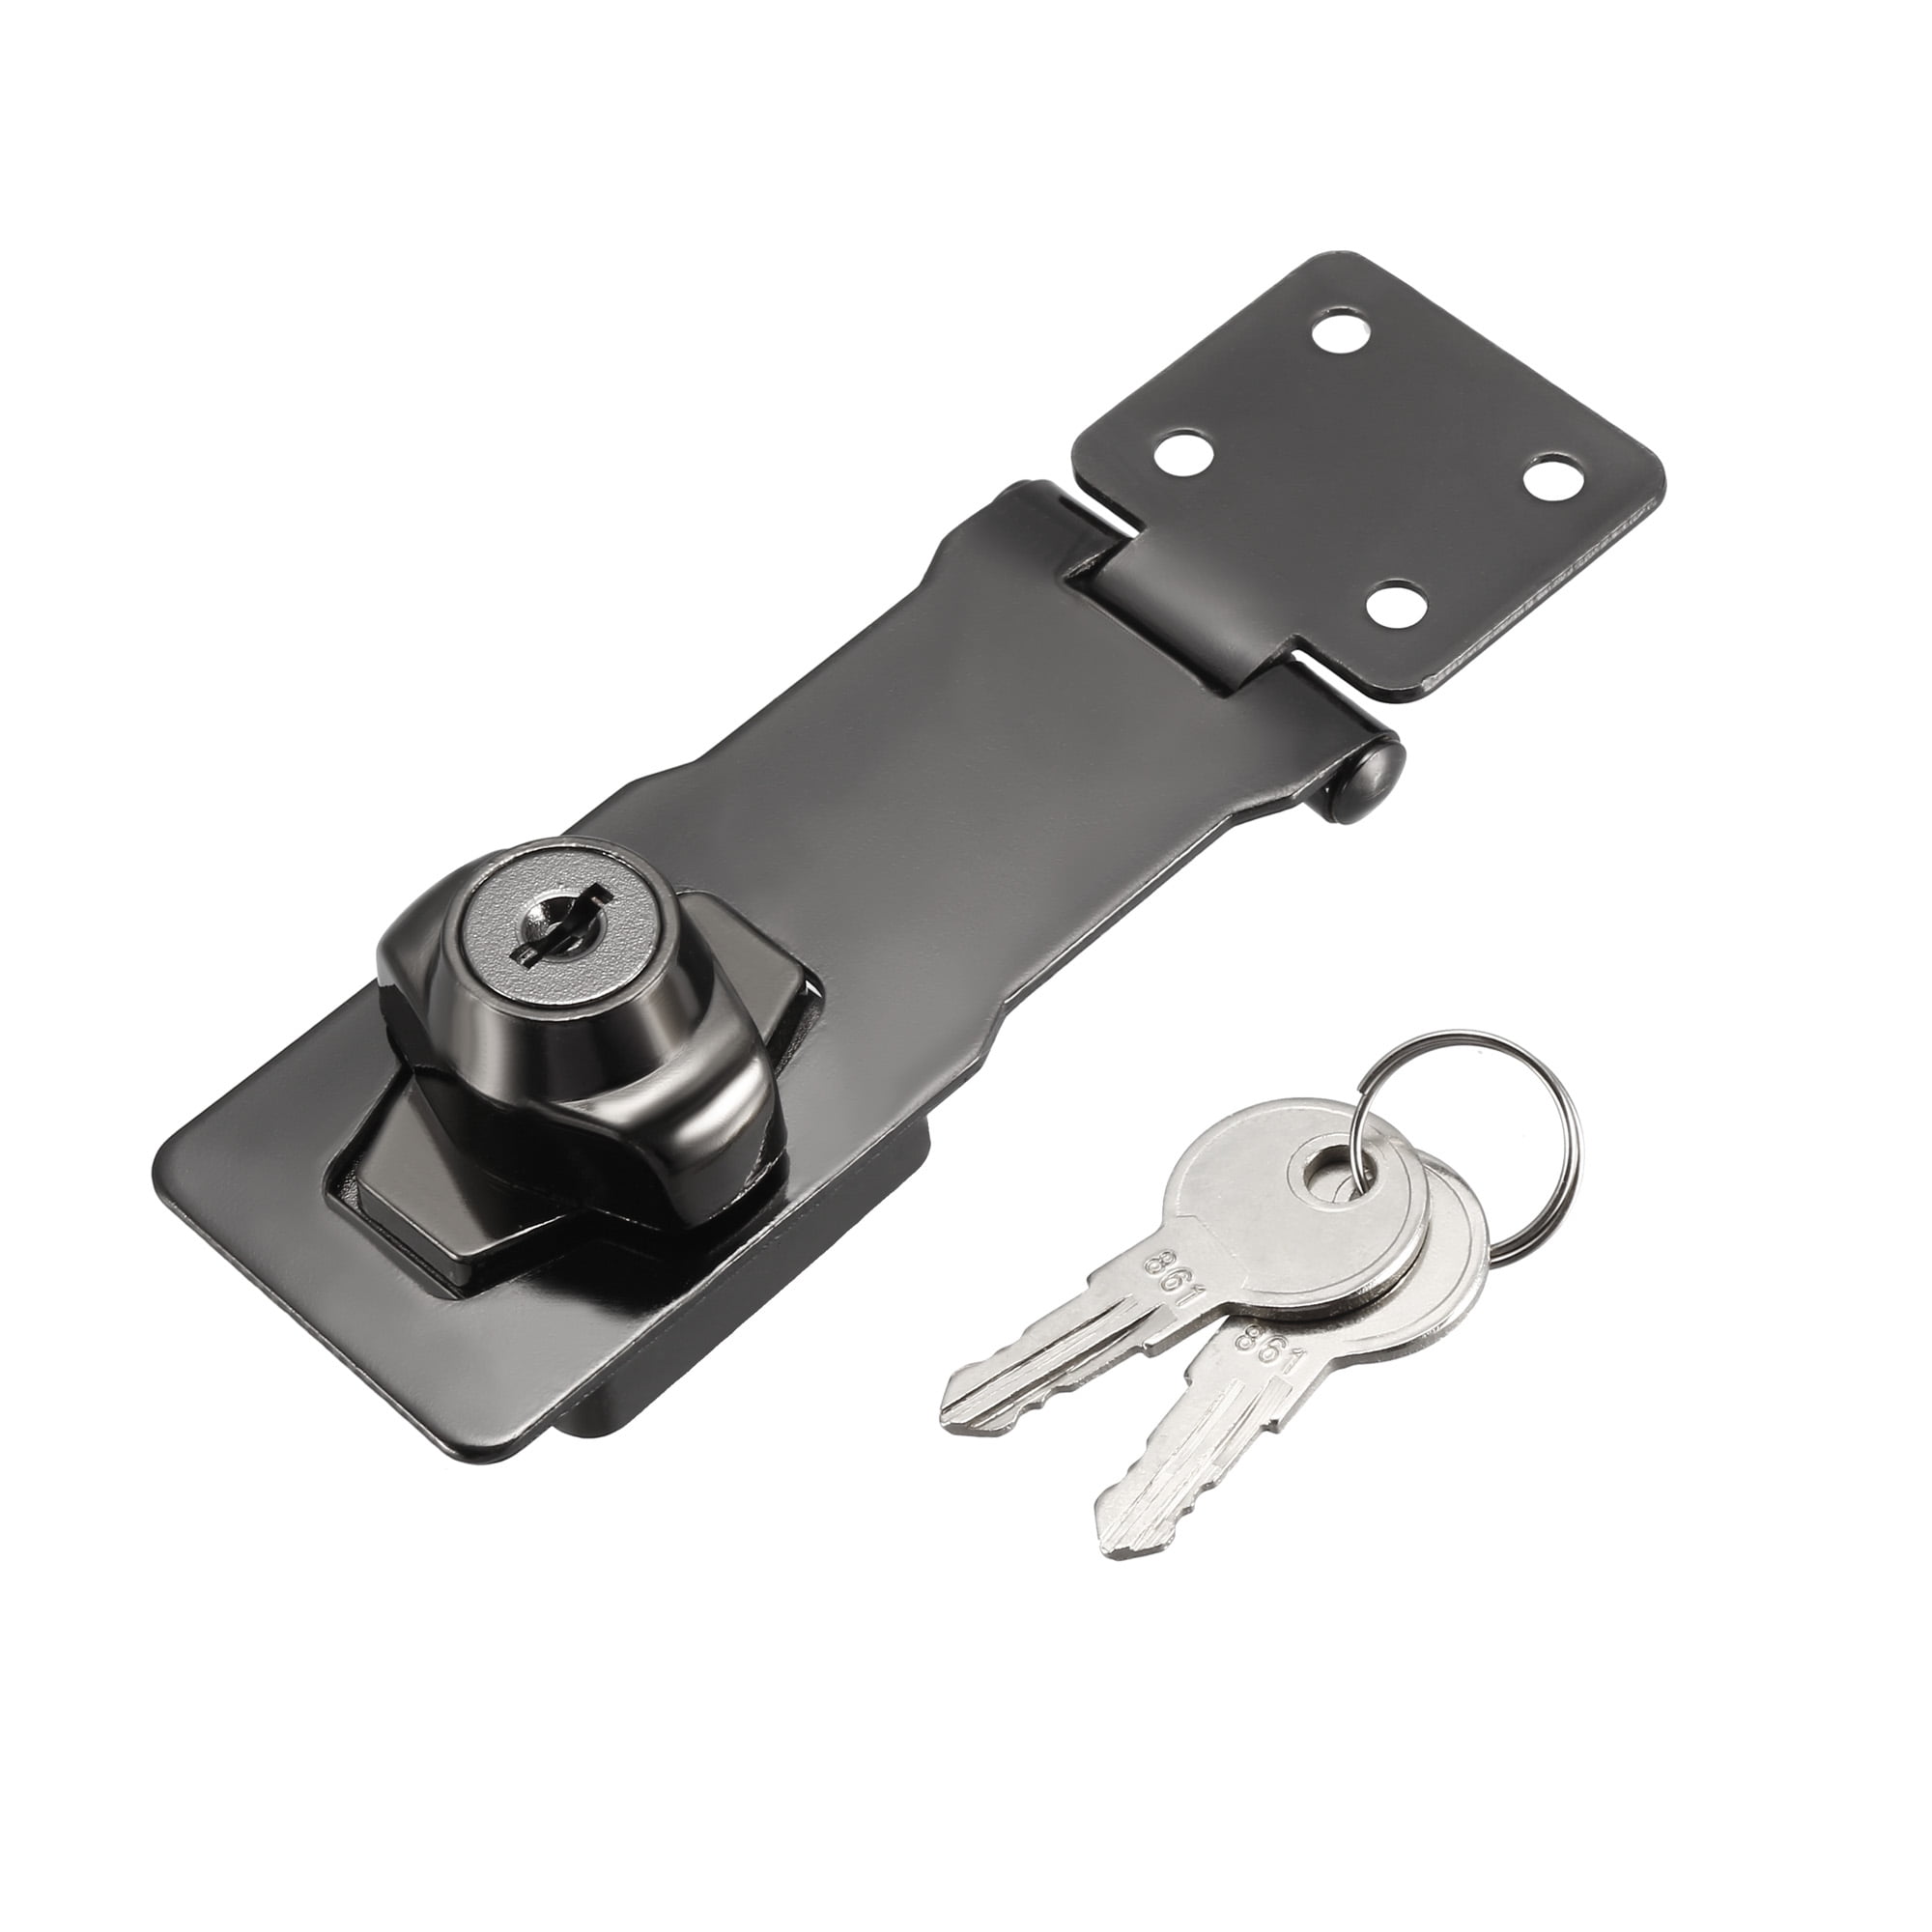 Hseamall 3 Inch Keyed Hasp Lock Metall Keyed Locking Haspe mit Schlüssel für Türen Schränke Möbel Hardware Keyed Alike 4PCS-1 